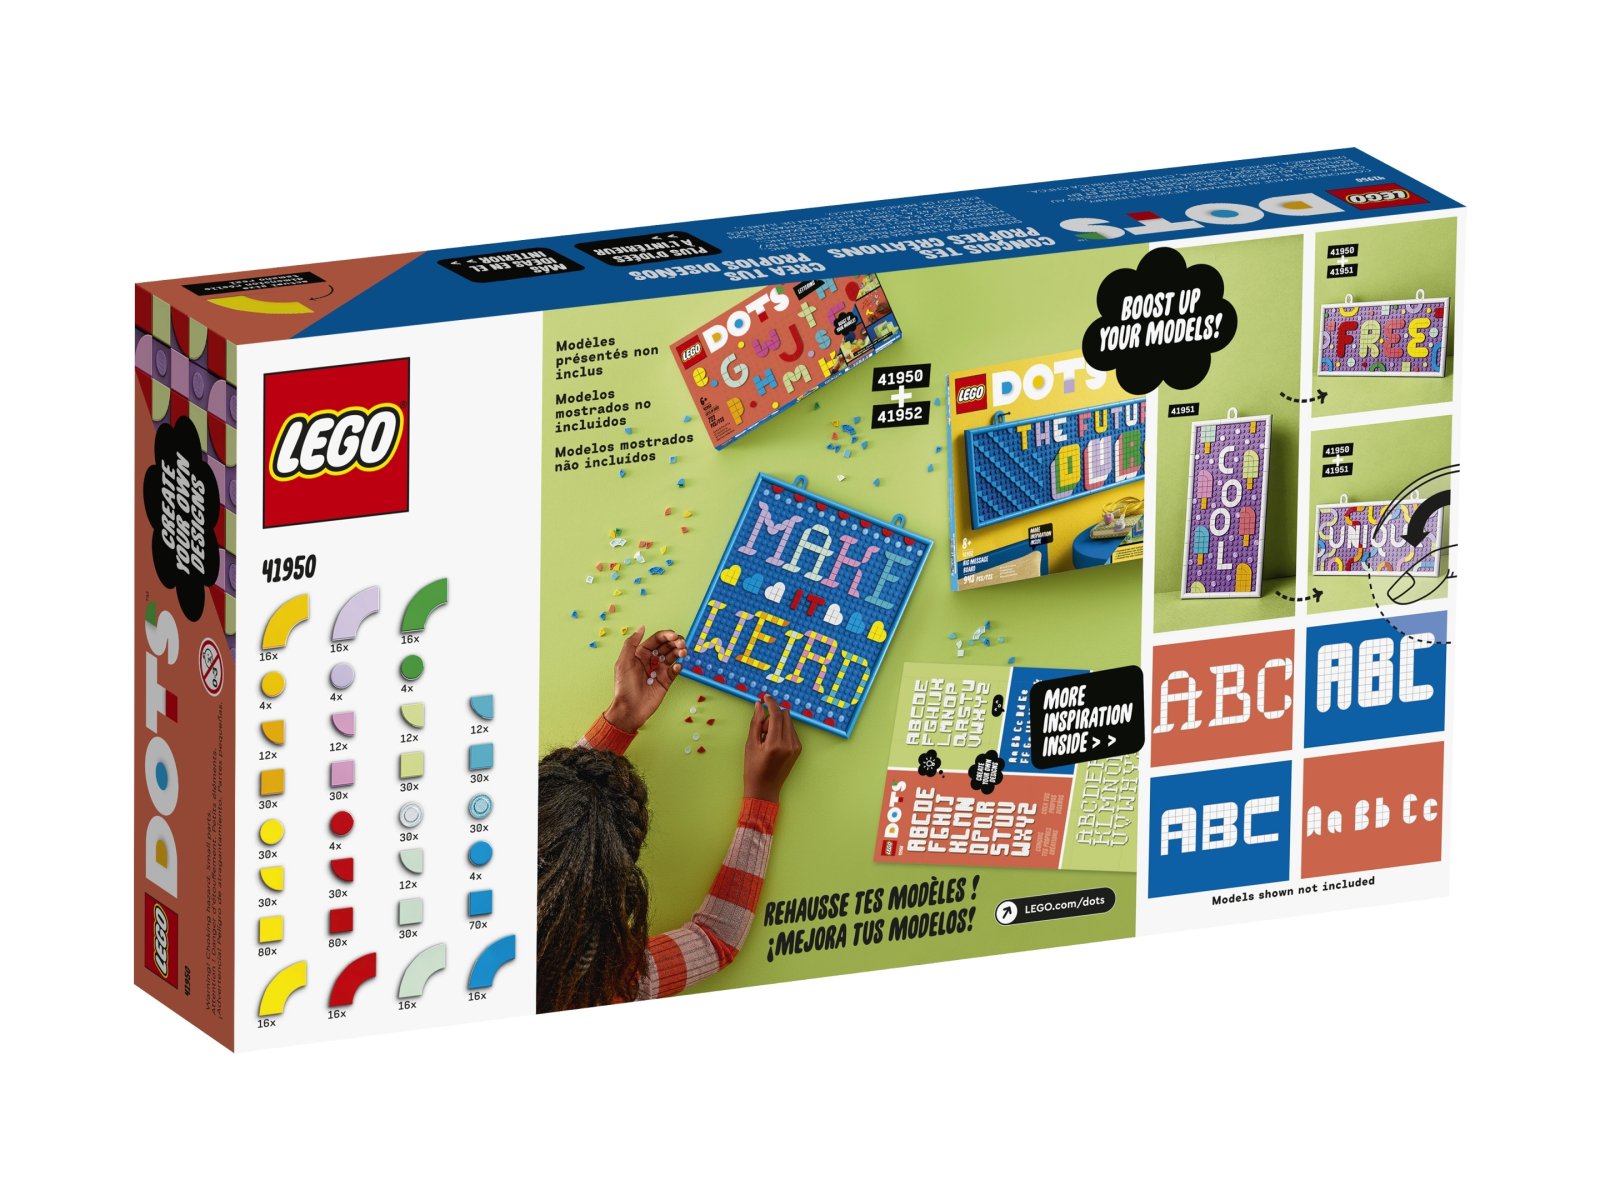 LEGO DOTS 41950 Rozmaitości DOTS — literki